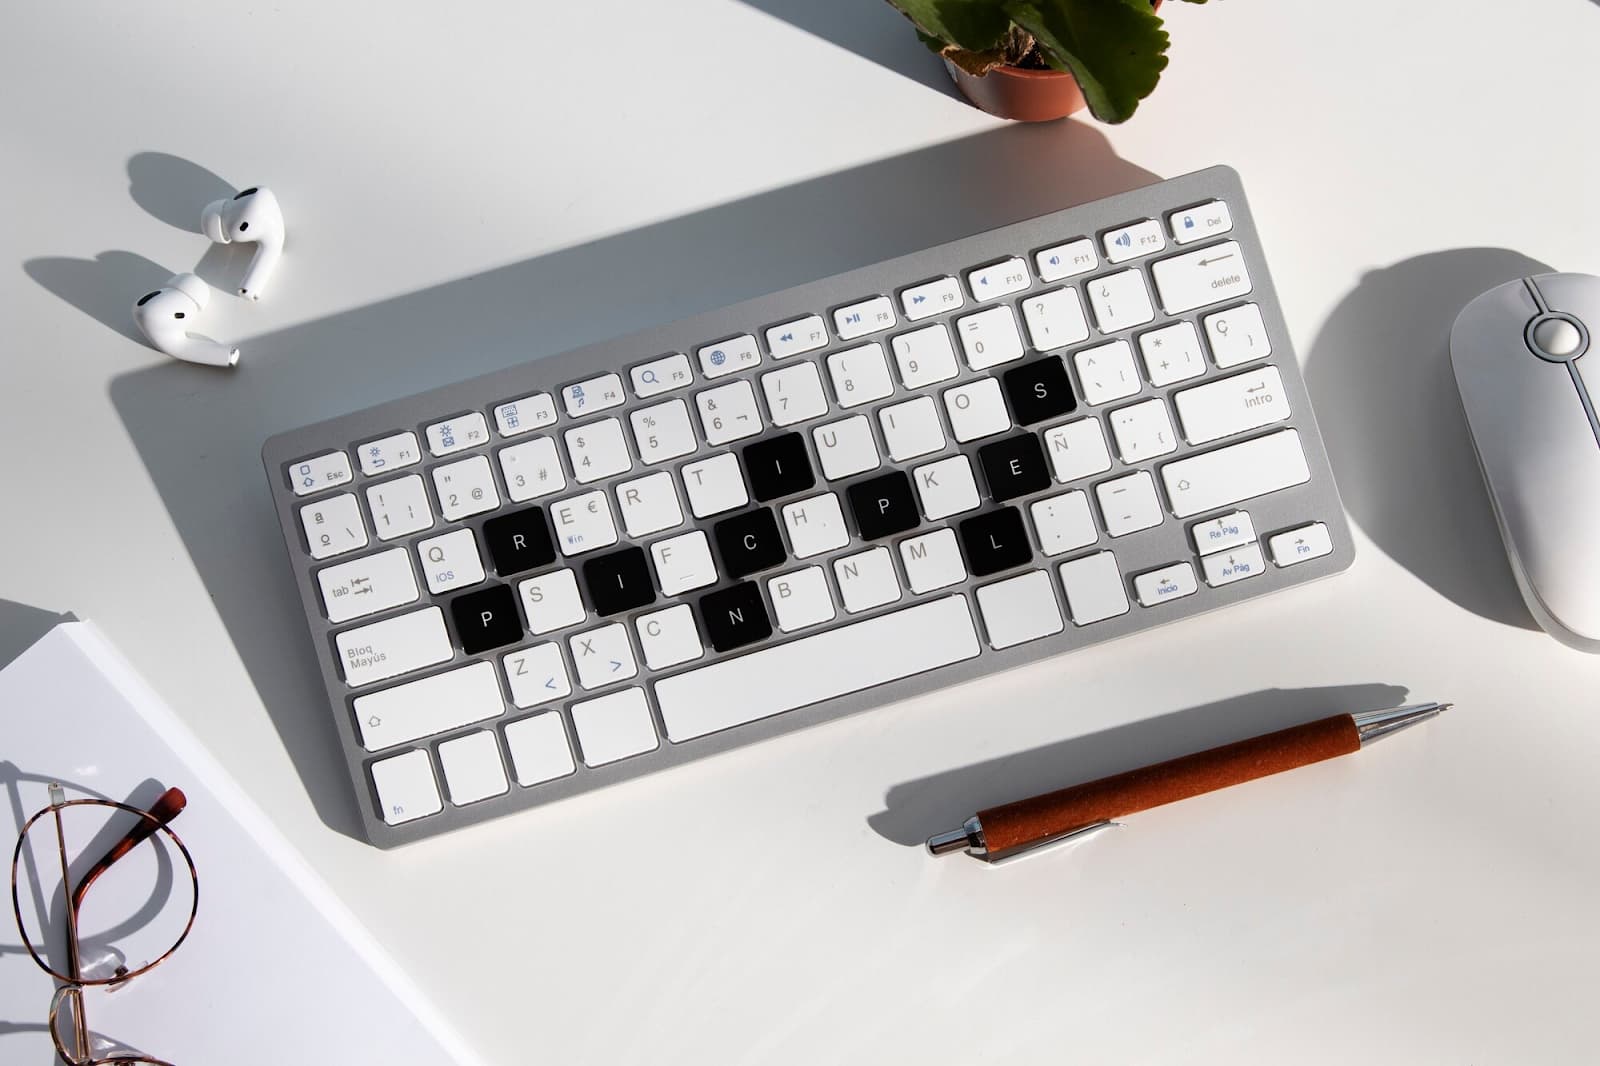 Keyboard on desktop